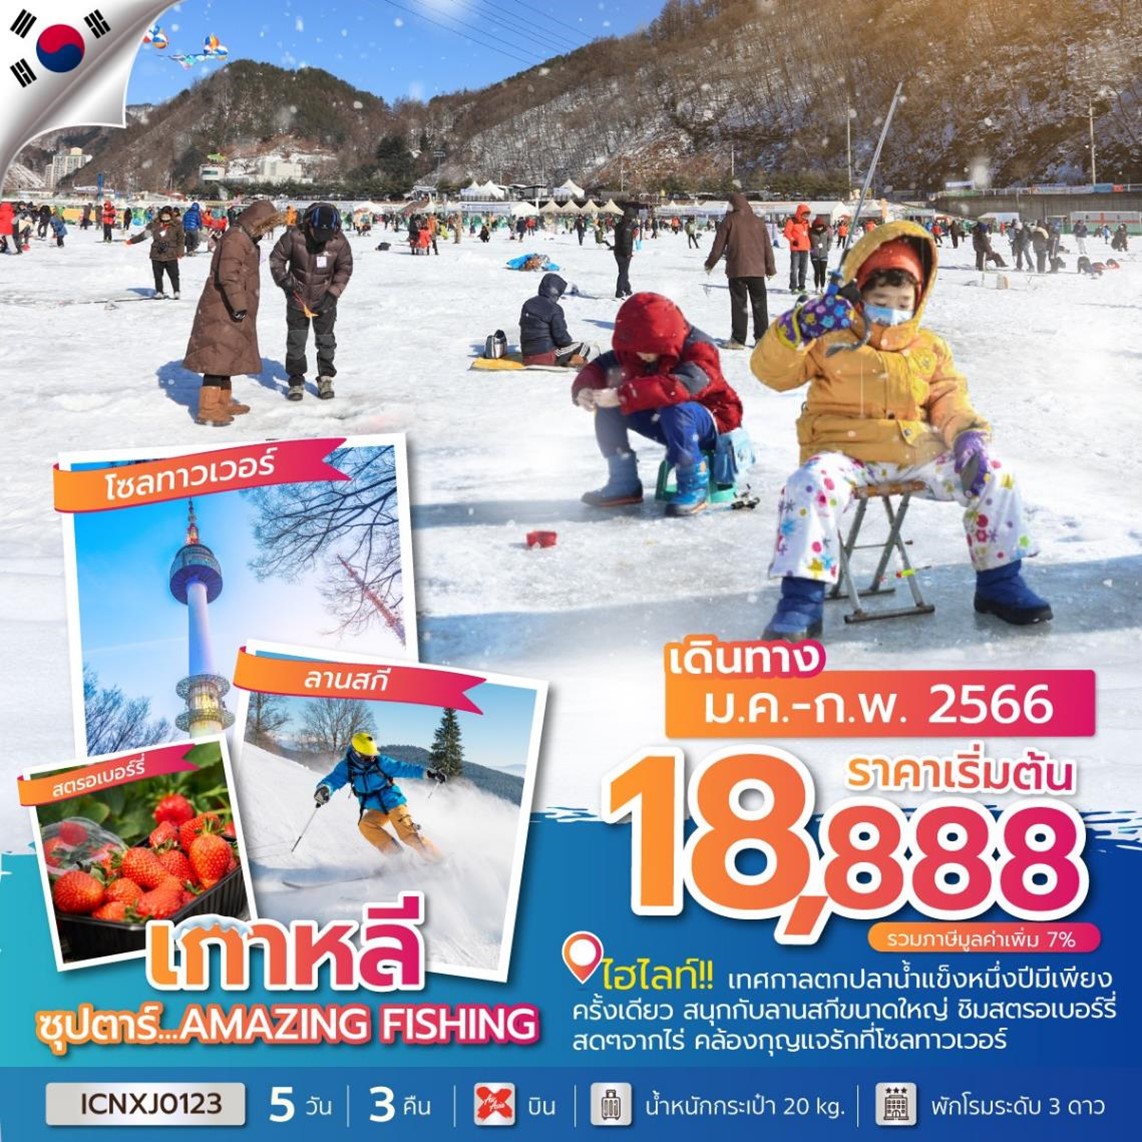 ทัวร์เกาหลีKOREA AMAZING FISHING 5Days 3Nights